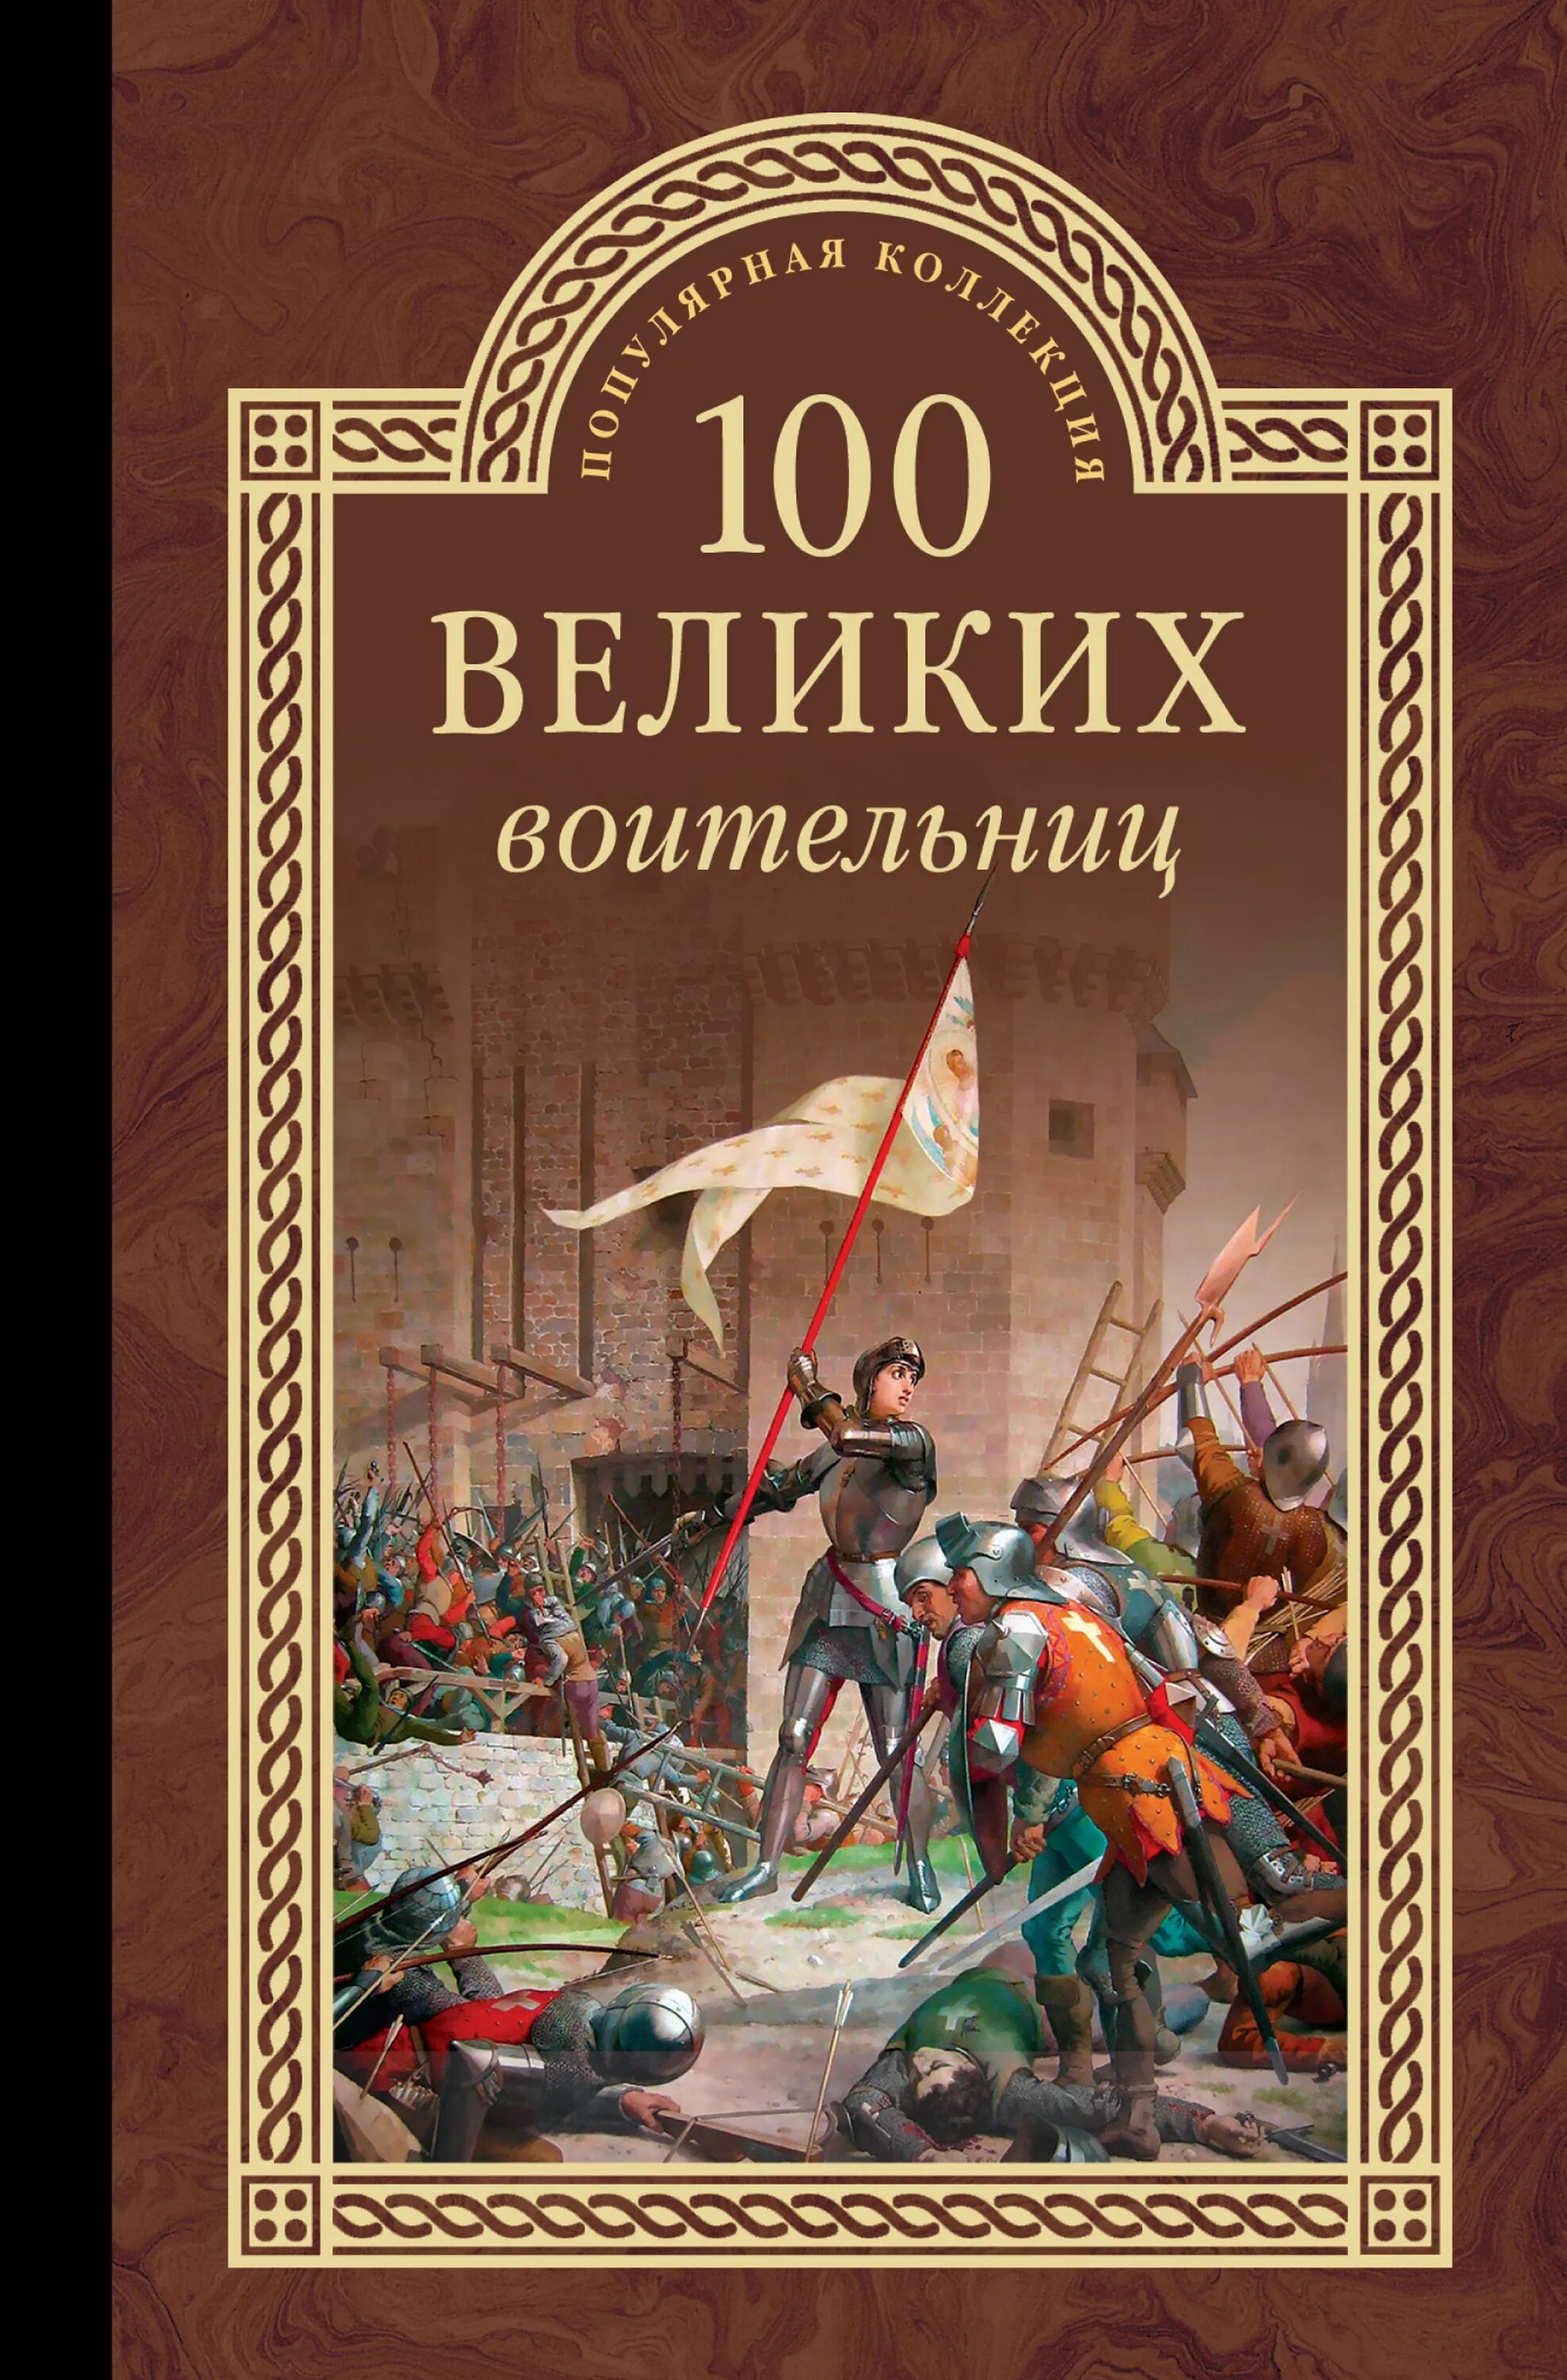 100 великих игр. 100 Великих воительниц. Книга 100 великих воительниц. СТО великих. Обложка книги 100 великих россиян.